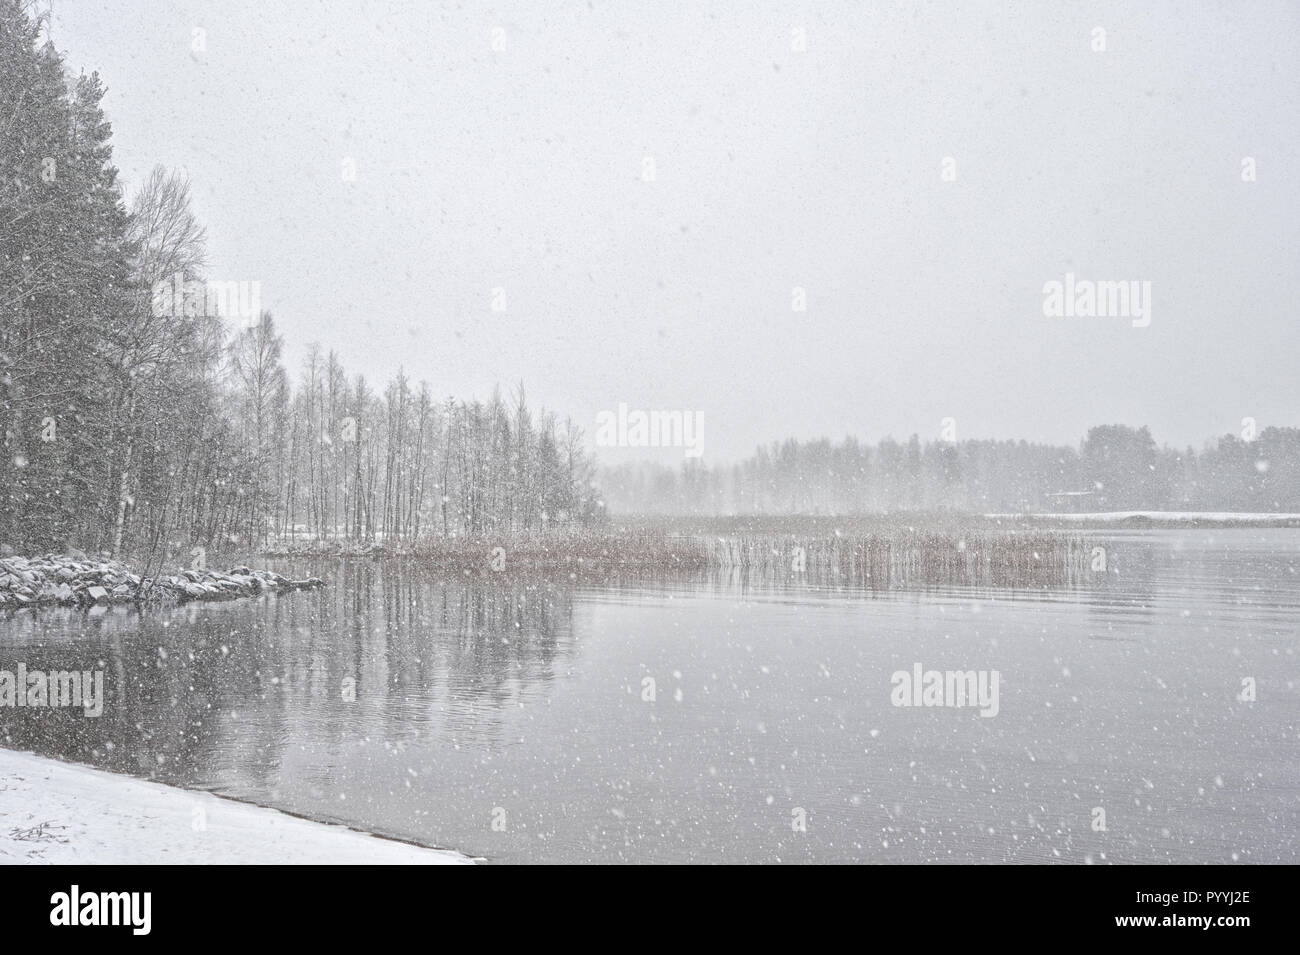 Snowing at the lake shore Stock Photo